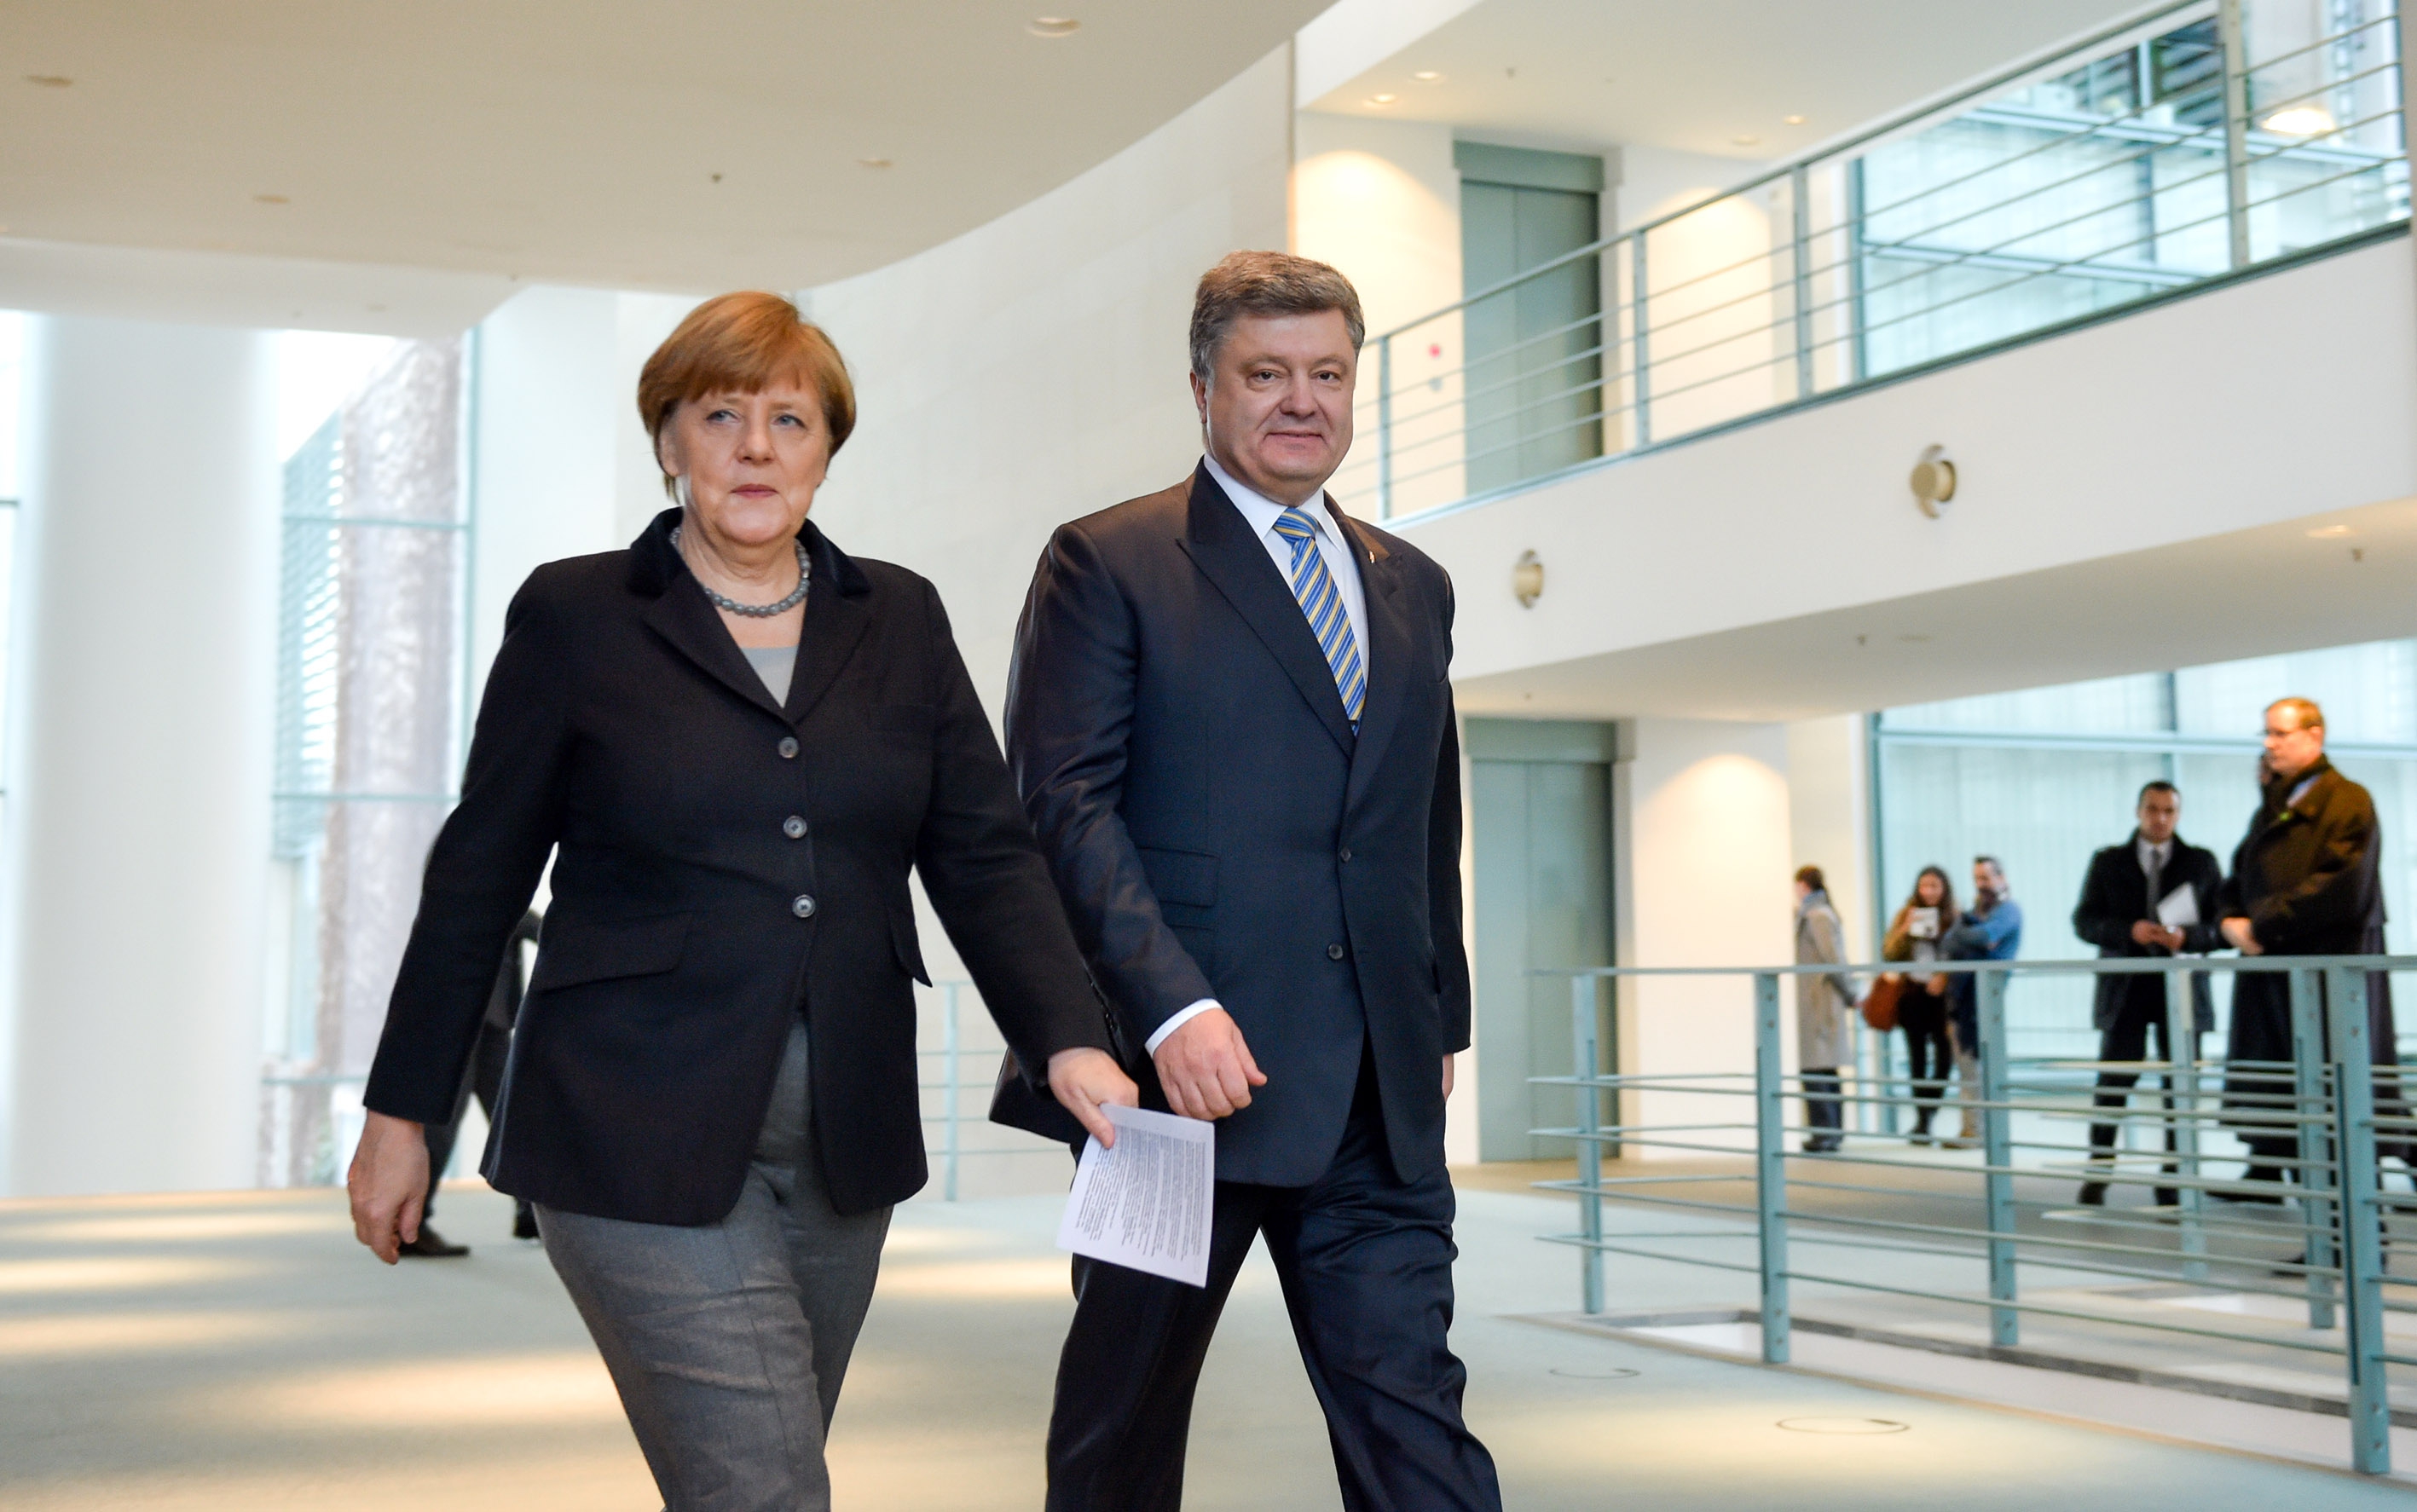 Порошенко назвал Меркель лидером мира и стабильности - фото 1